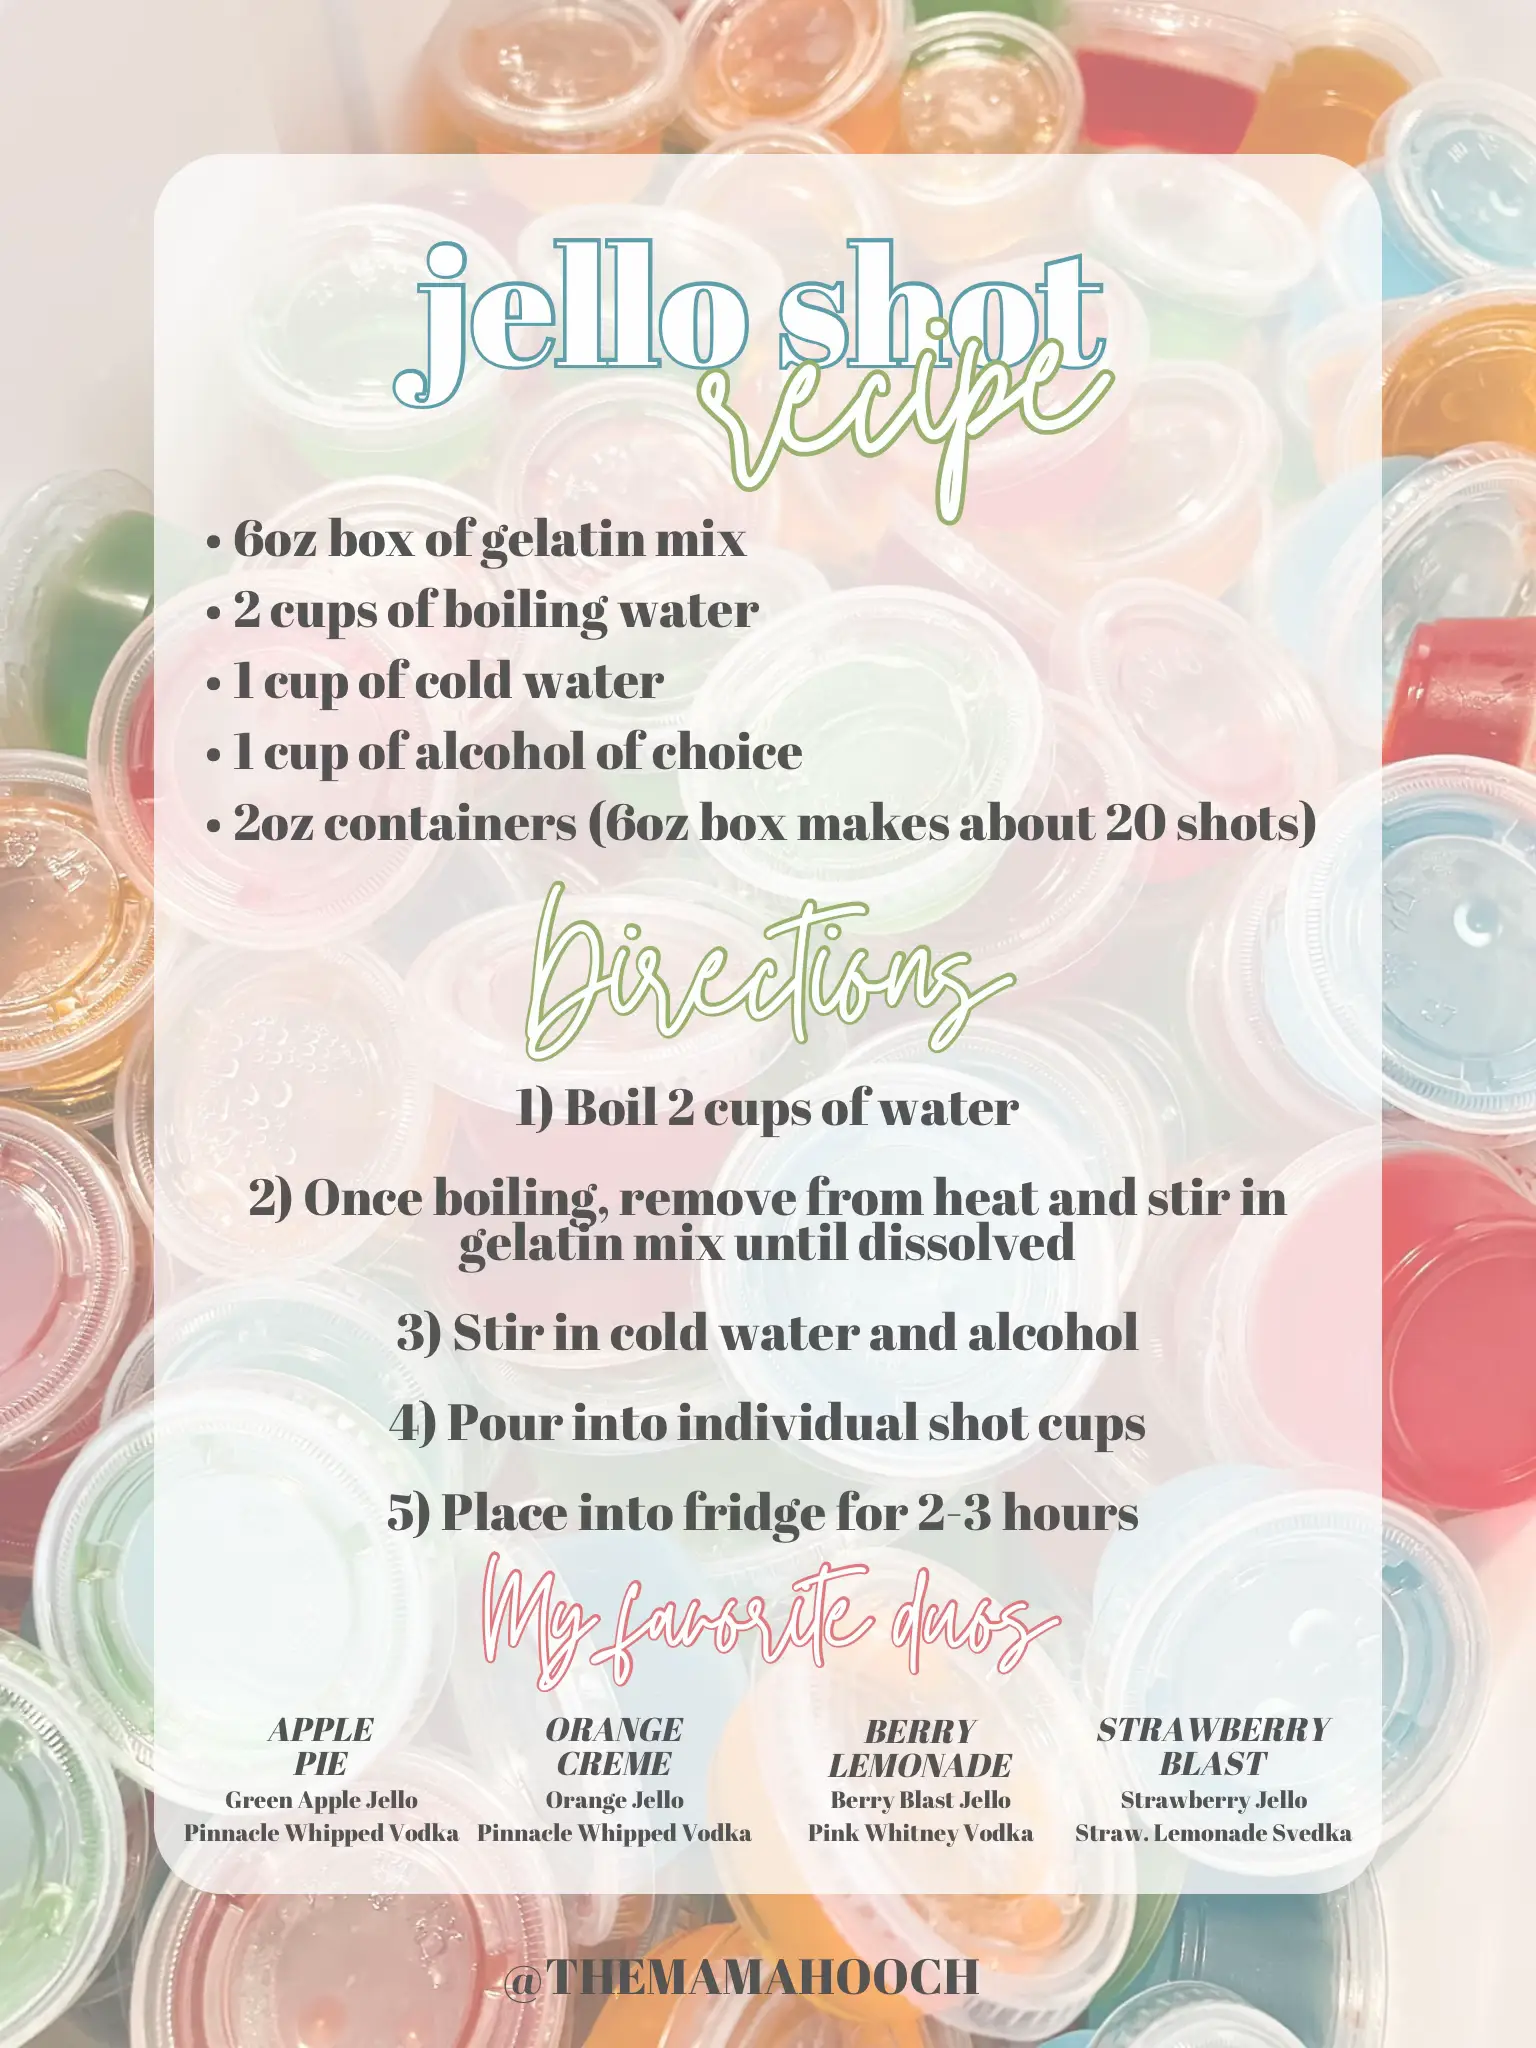 My Favorite Jello Shots Recipe